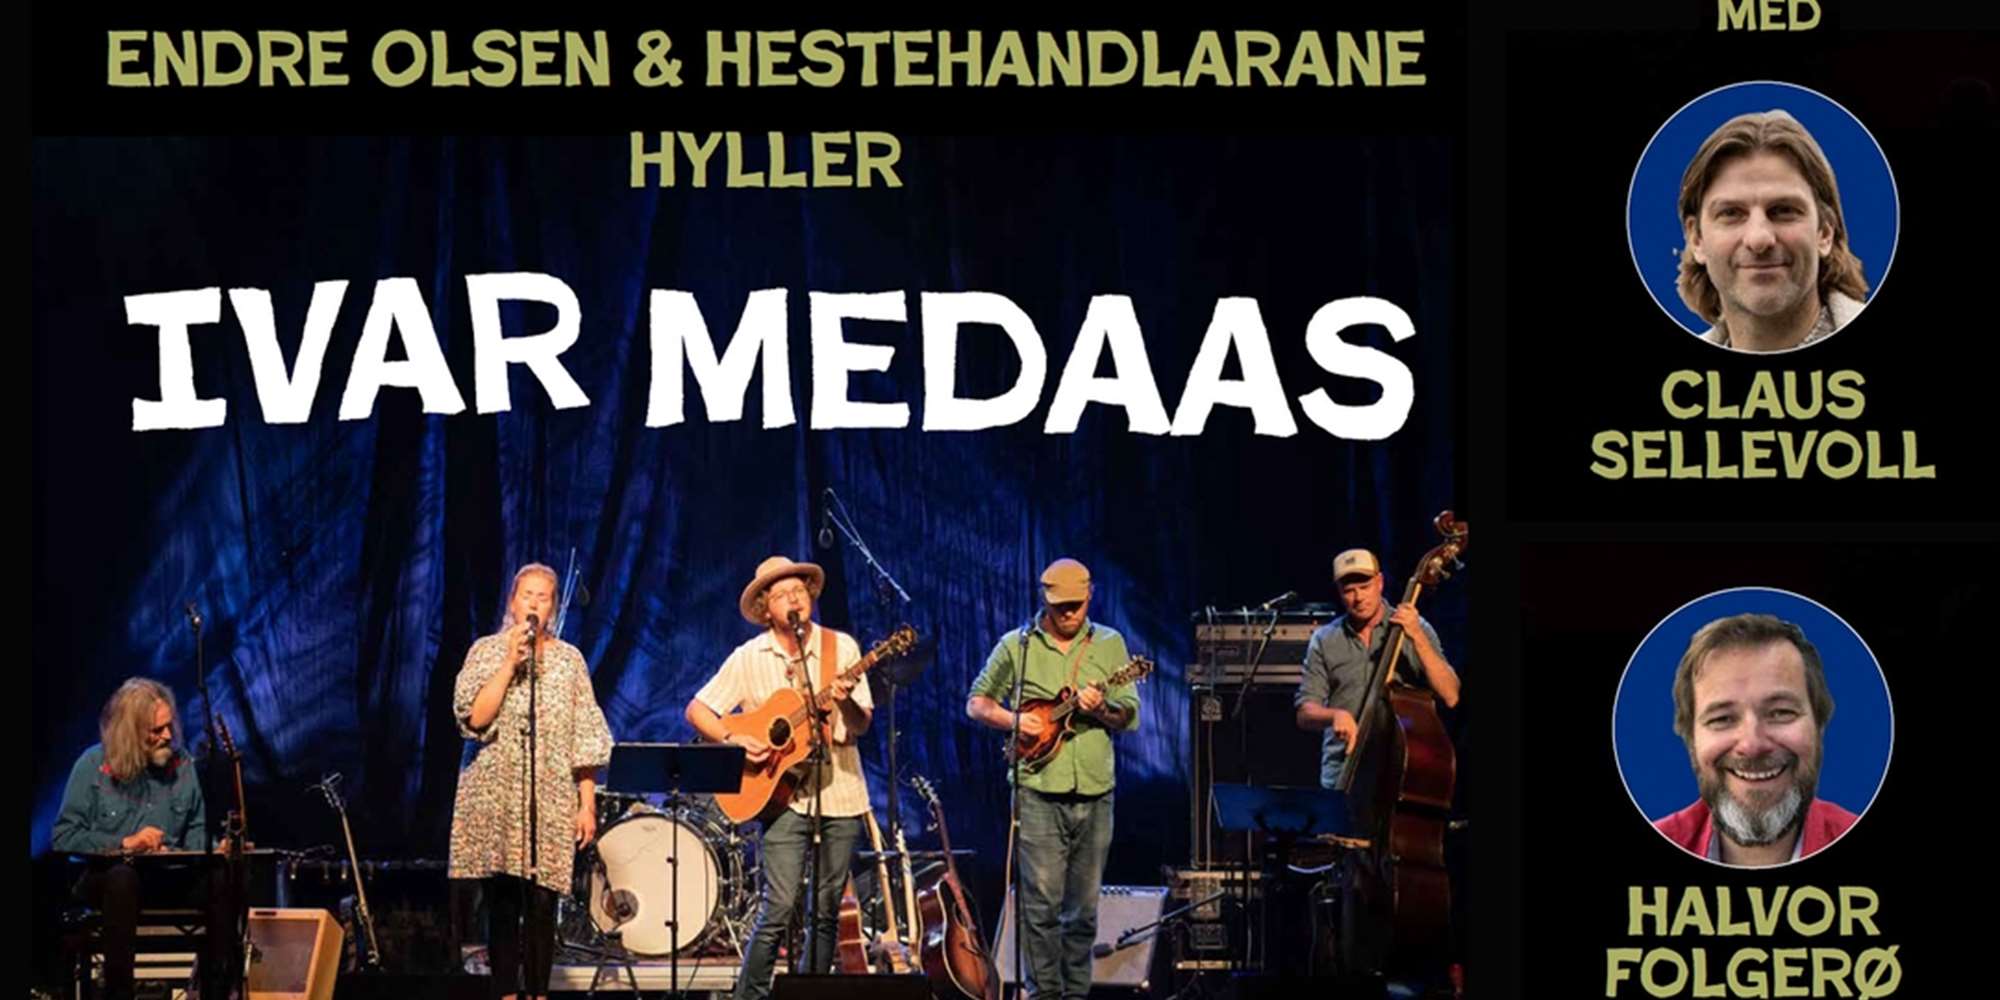 Endre Olsen & Hestehandlarane hyller Ivar Medaas